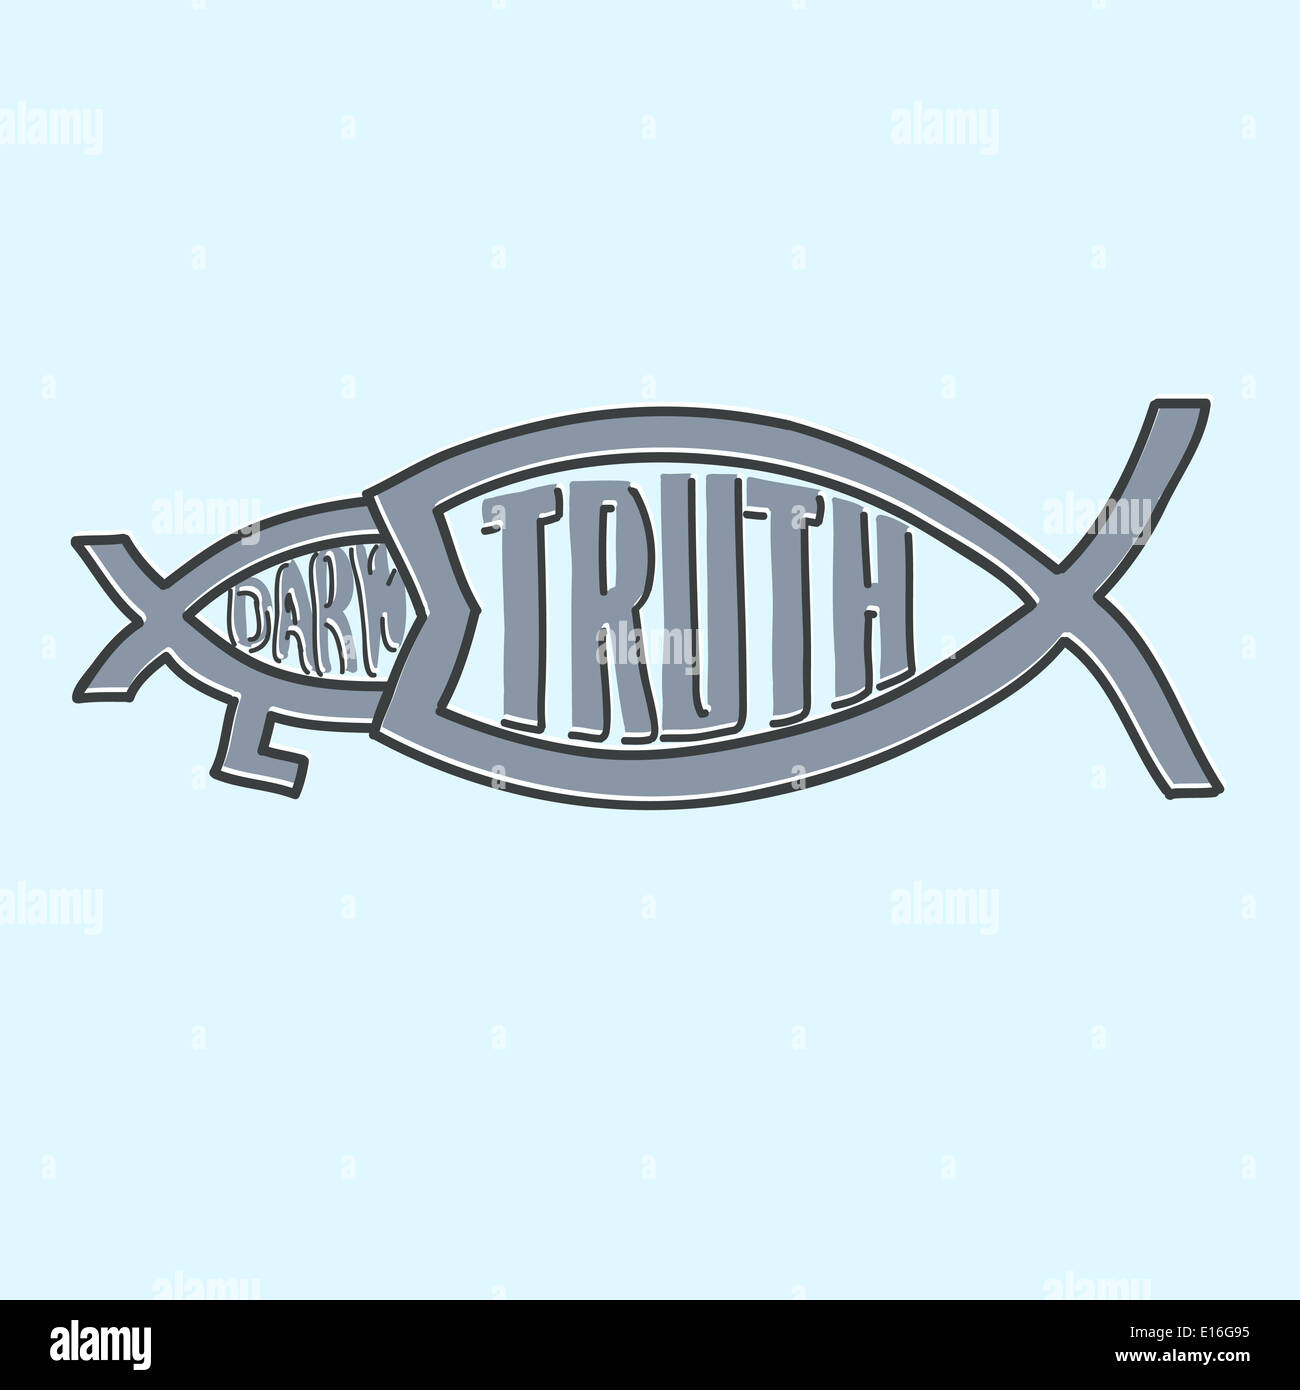 Truth fish eating Darwin fish illustration Stock Photo